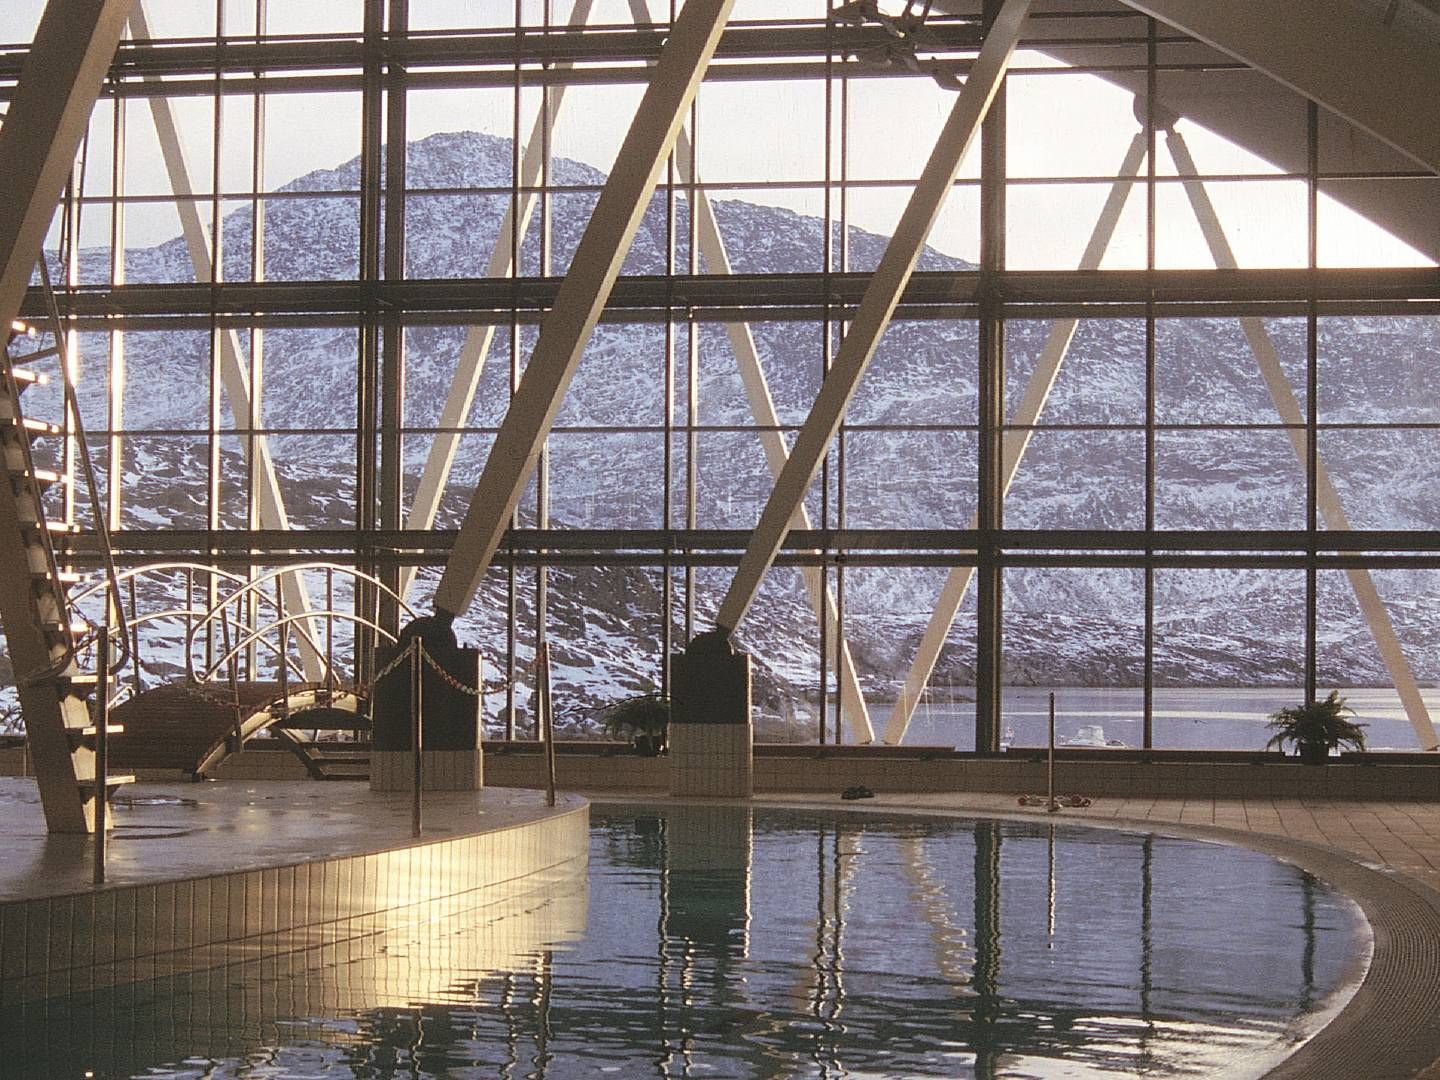 Malik svømmehal i Nuuk, Grønland, er blandt de mange projekter, som KHR Architecture står bag. | Foto: KHR Architecture